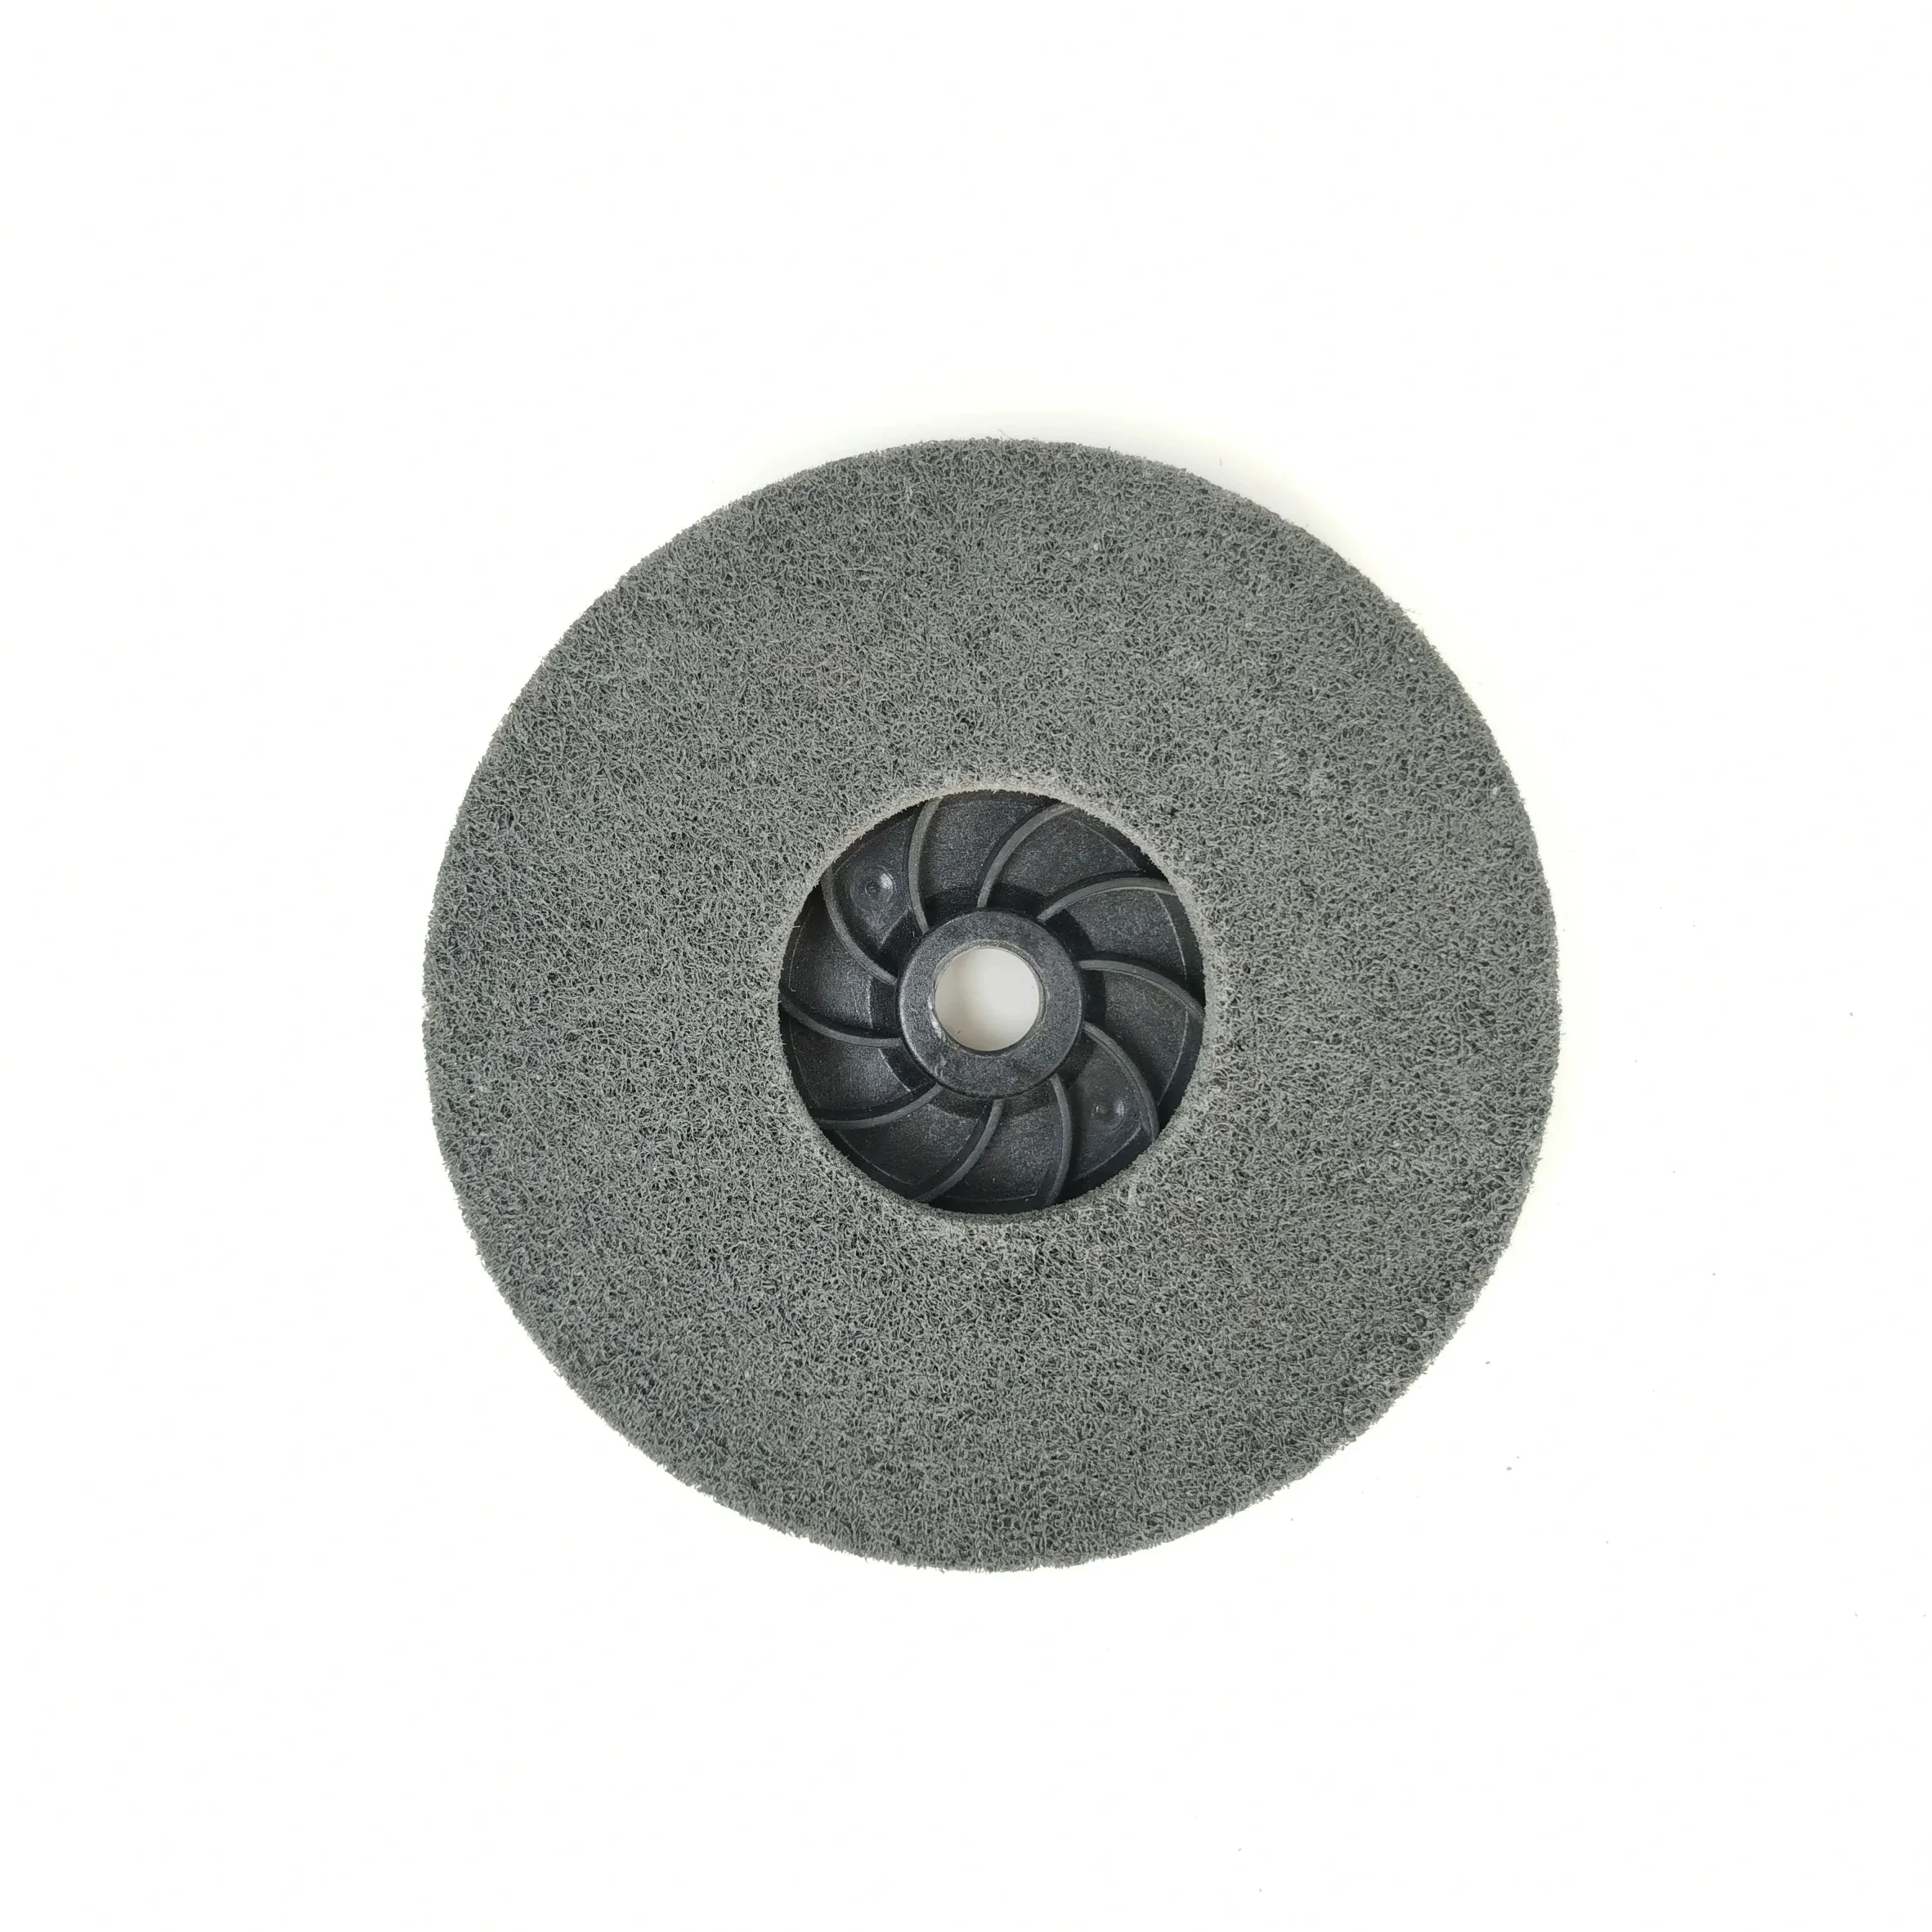 Disco de plástico de apoio rápido e fácil de modificar, disco de plástico para polimento e acabamento de superfície, 5 polegadas